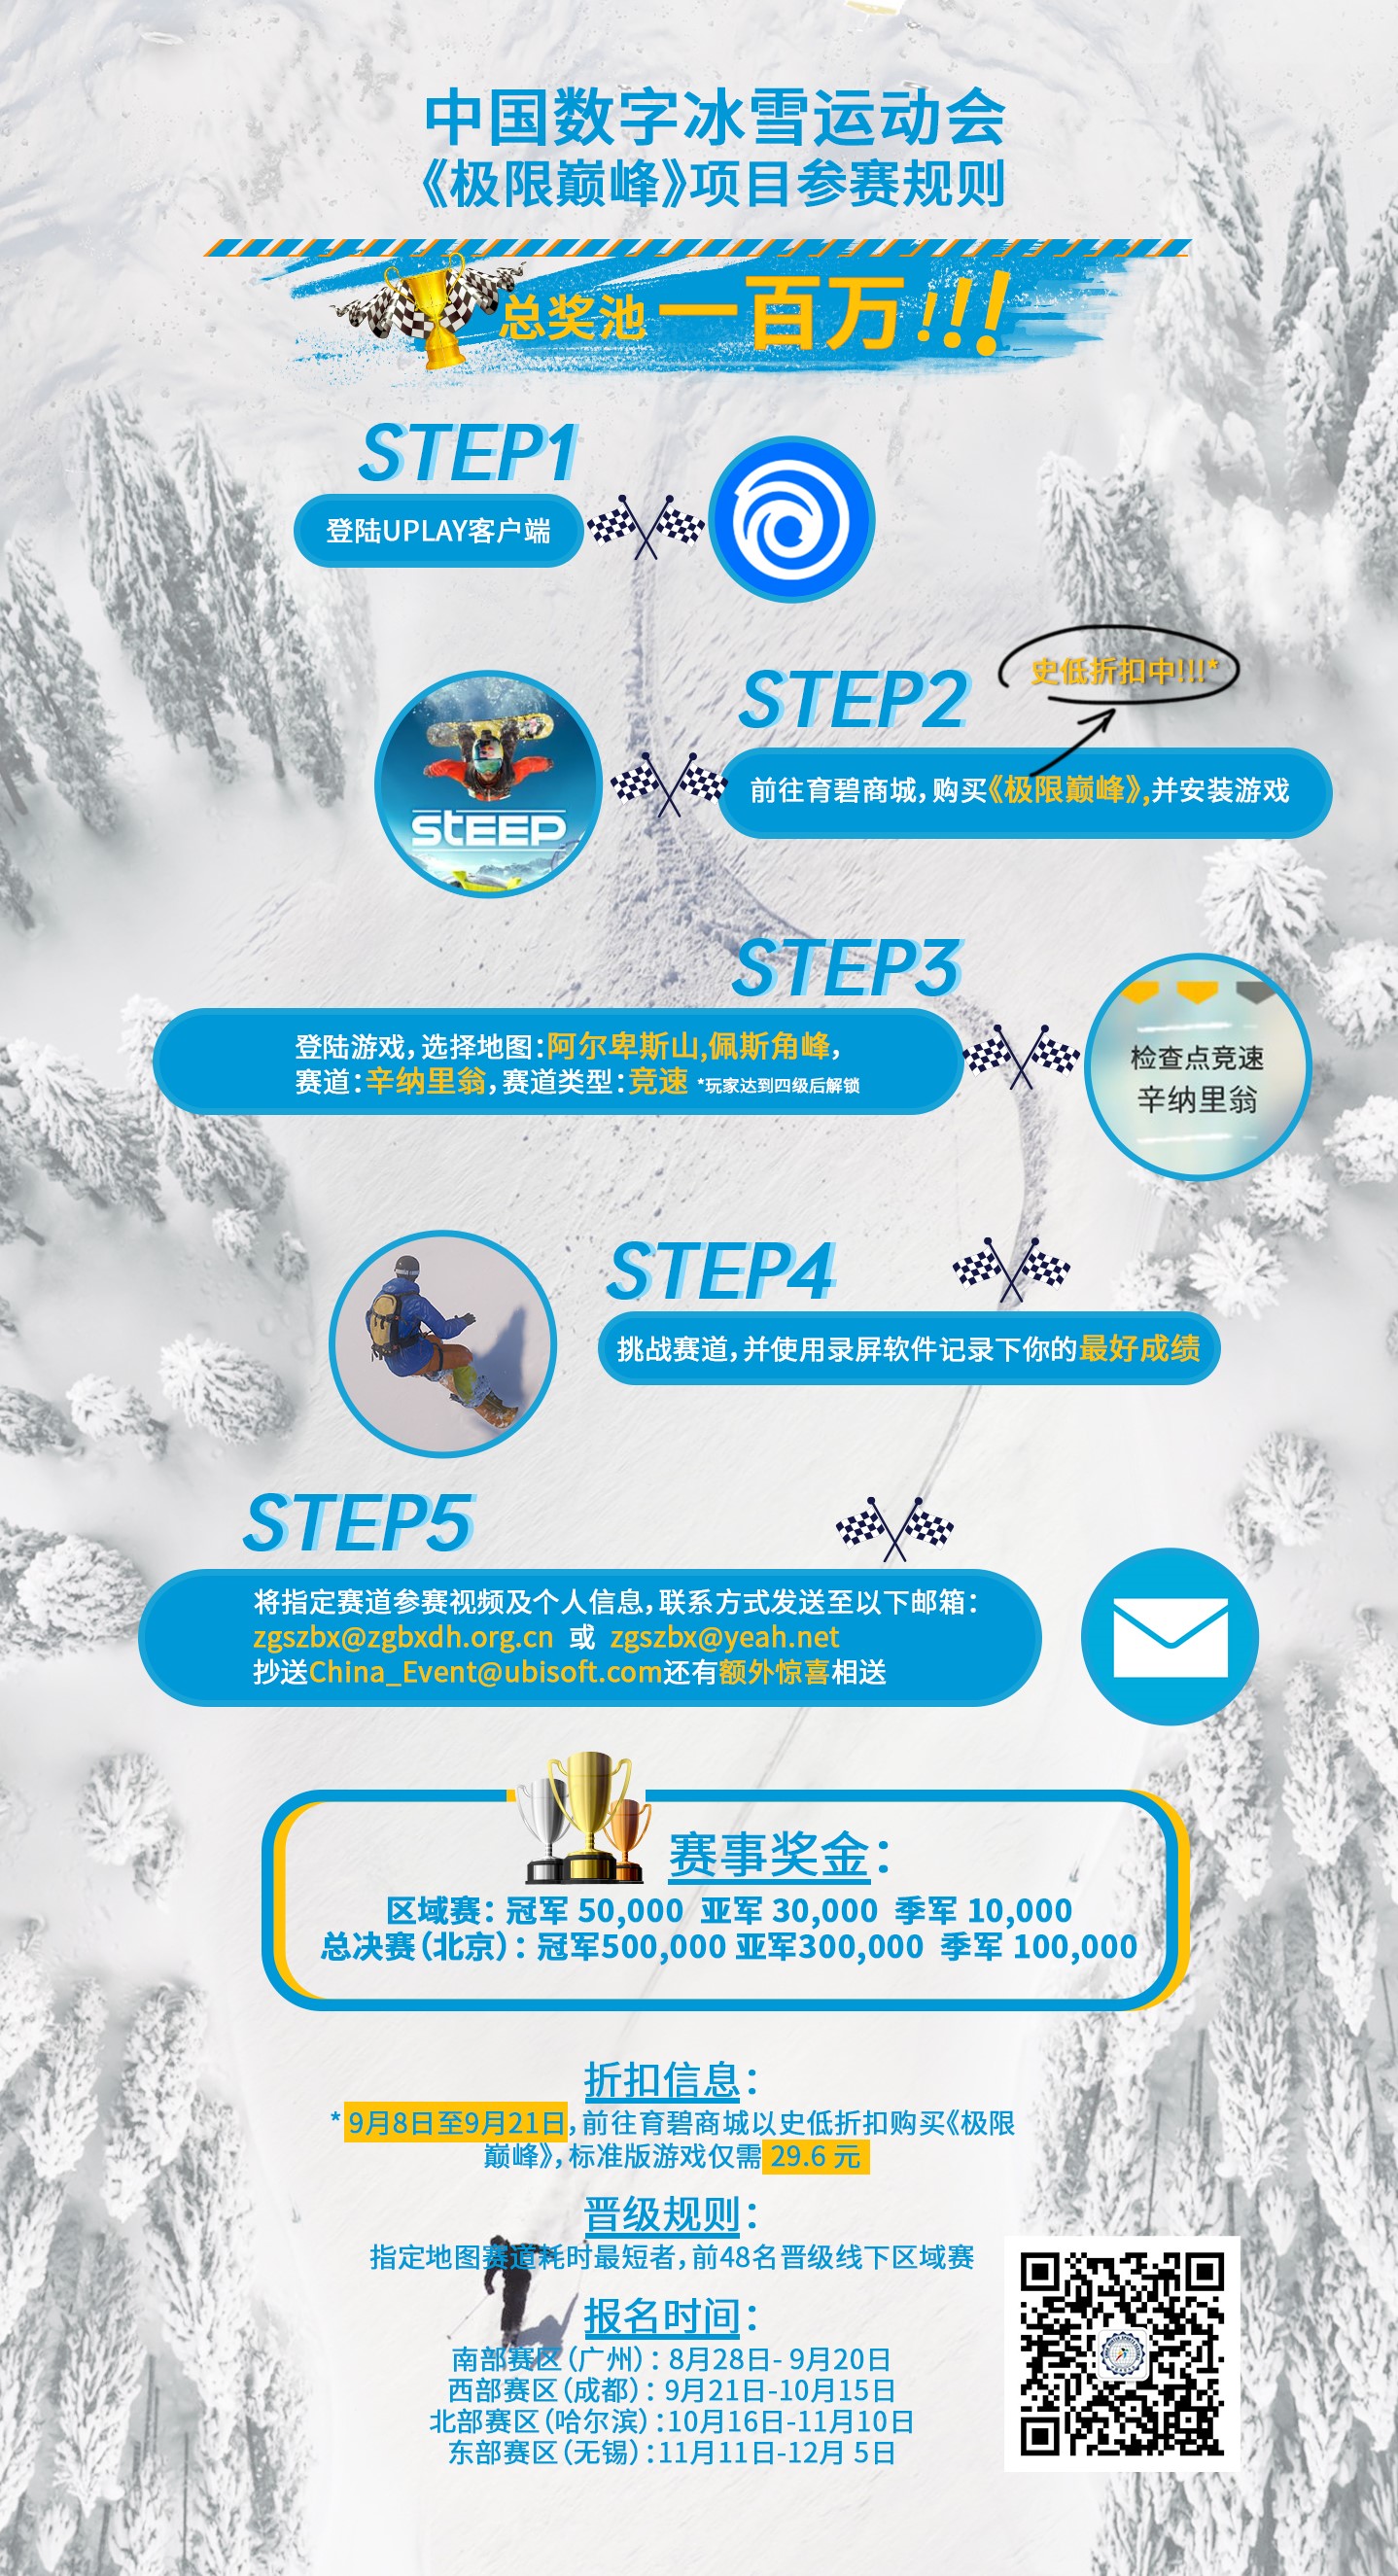  育碧携手中国首届冰雪大会《极限巅峰》成指定赛事游戏